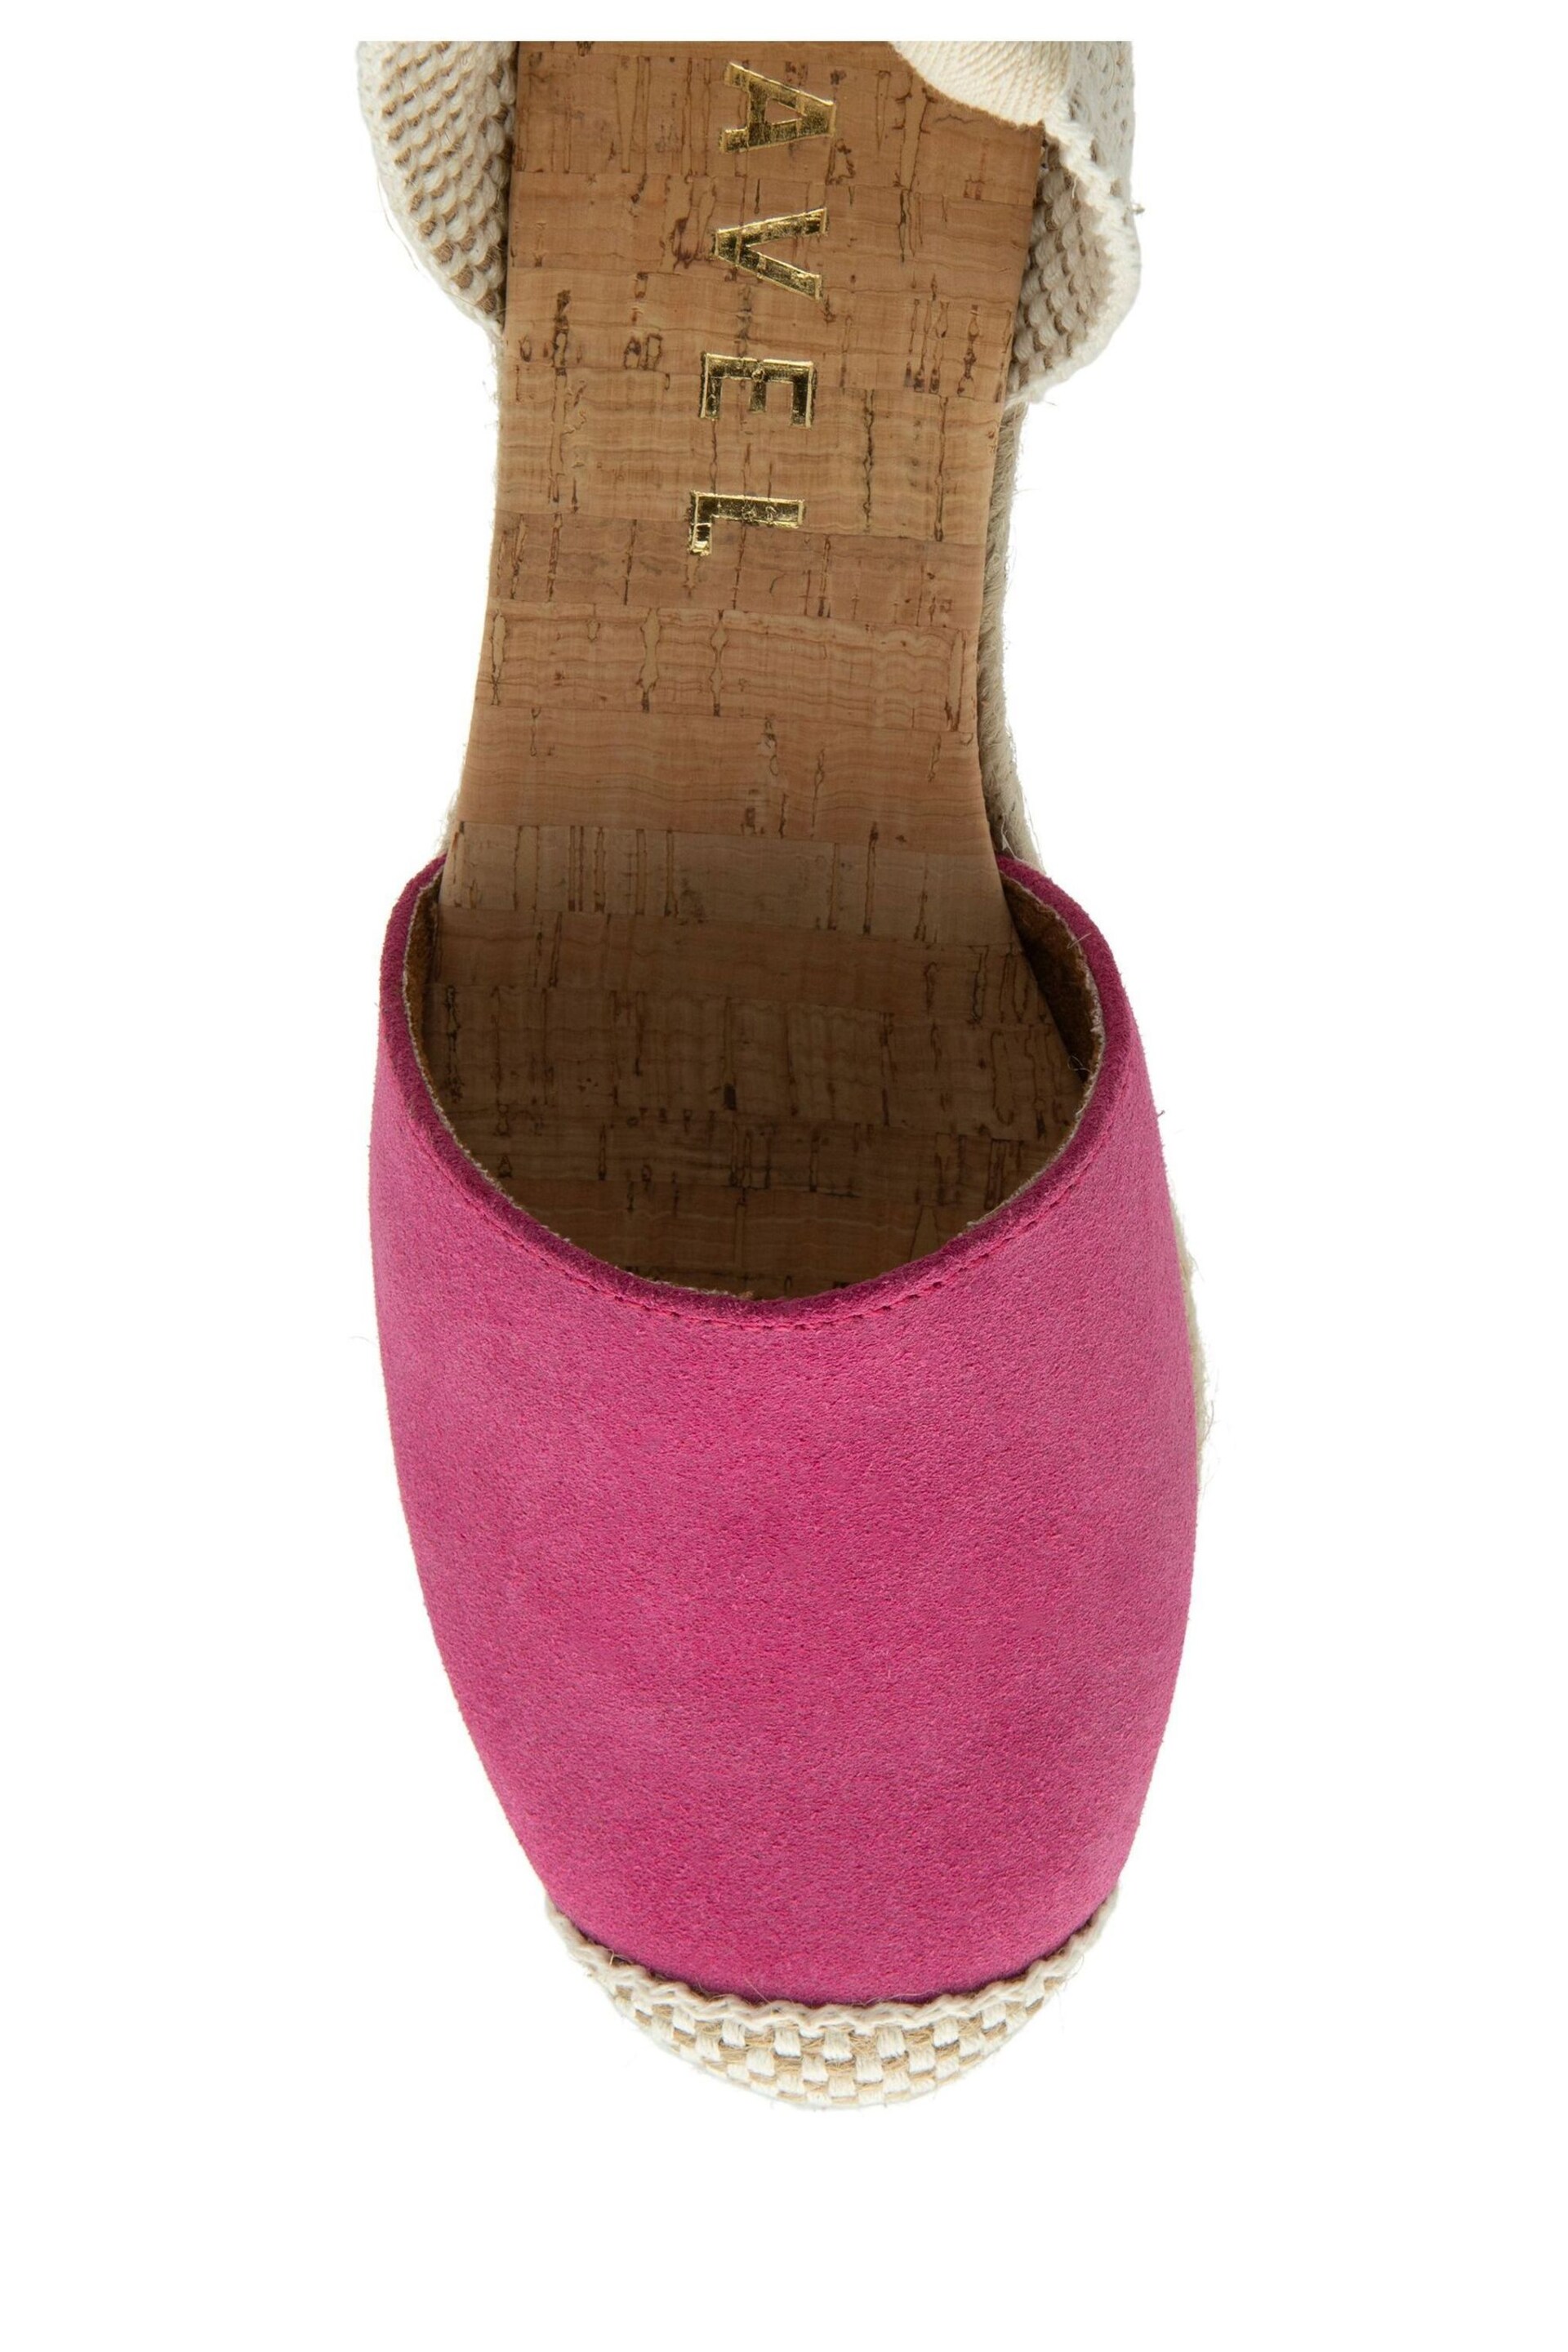 Ravel Pink Espadrilles Wedges Sandals - Image 4 of 4